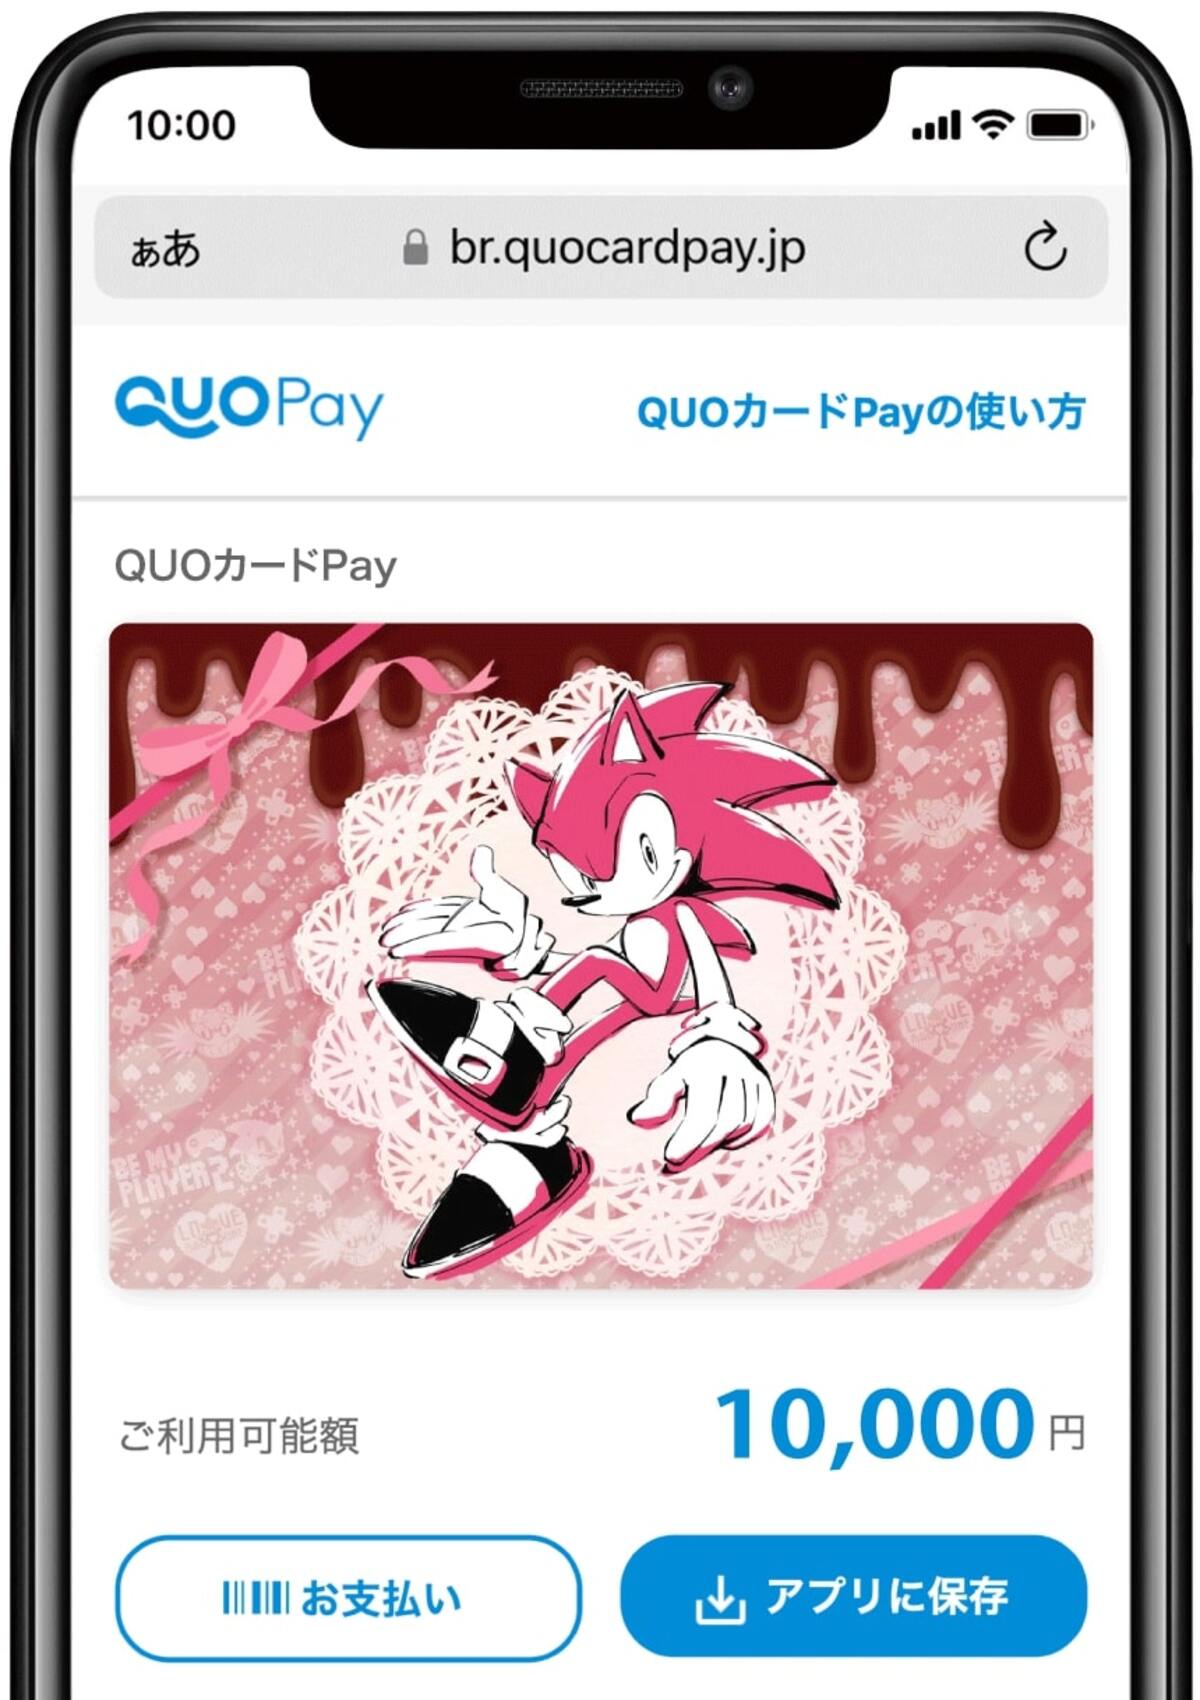 《刺蝟索尼克》情人節原創設計QUO卡支付